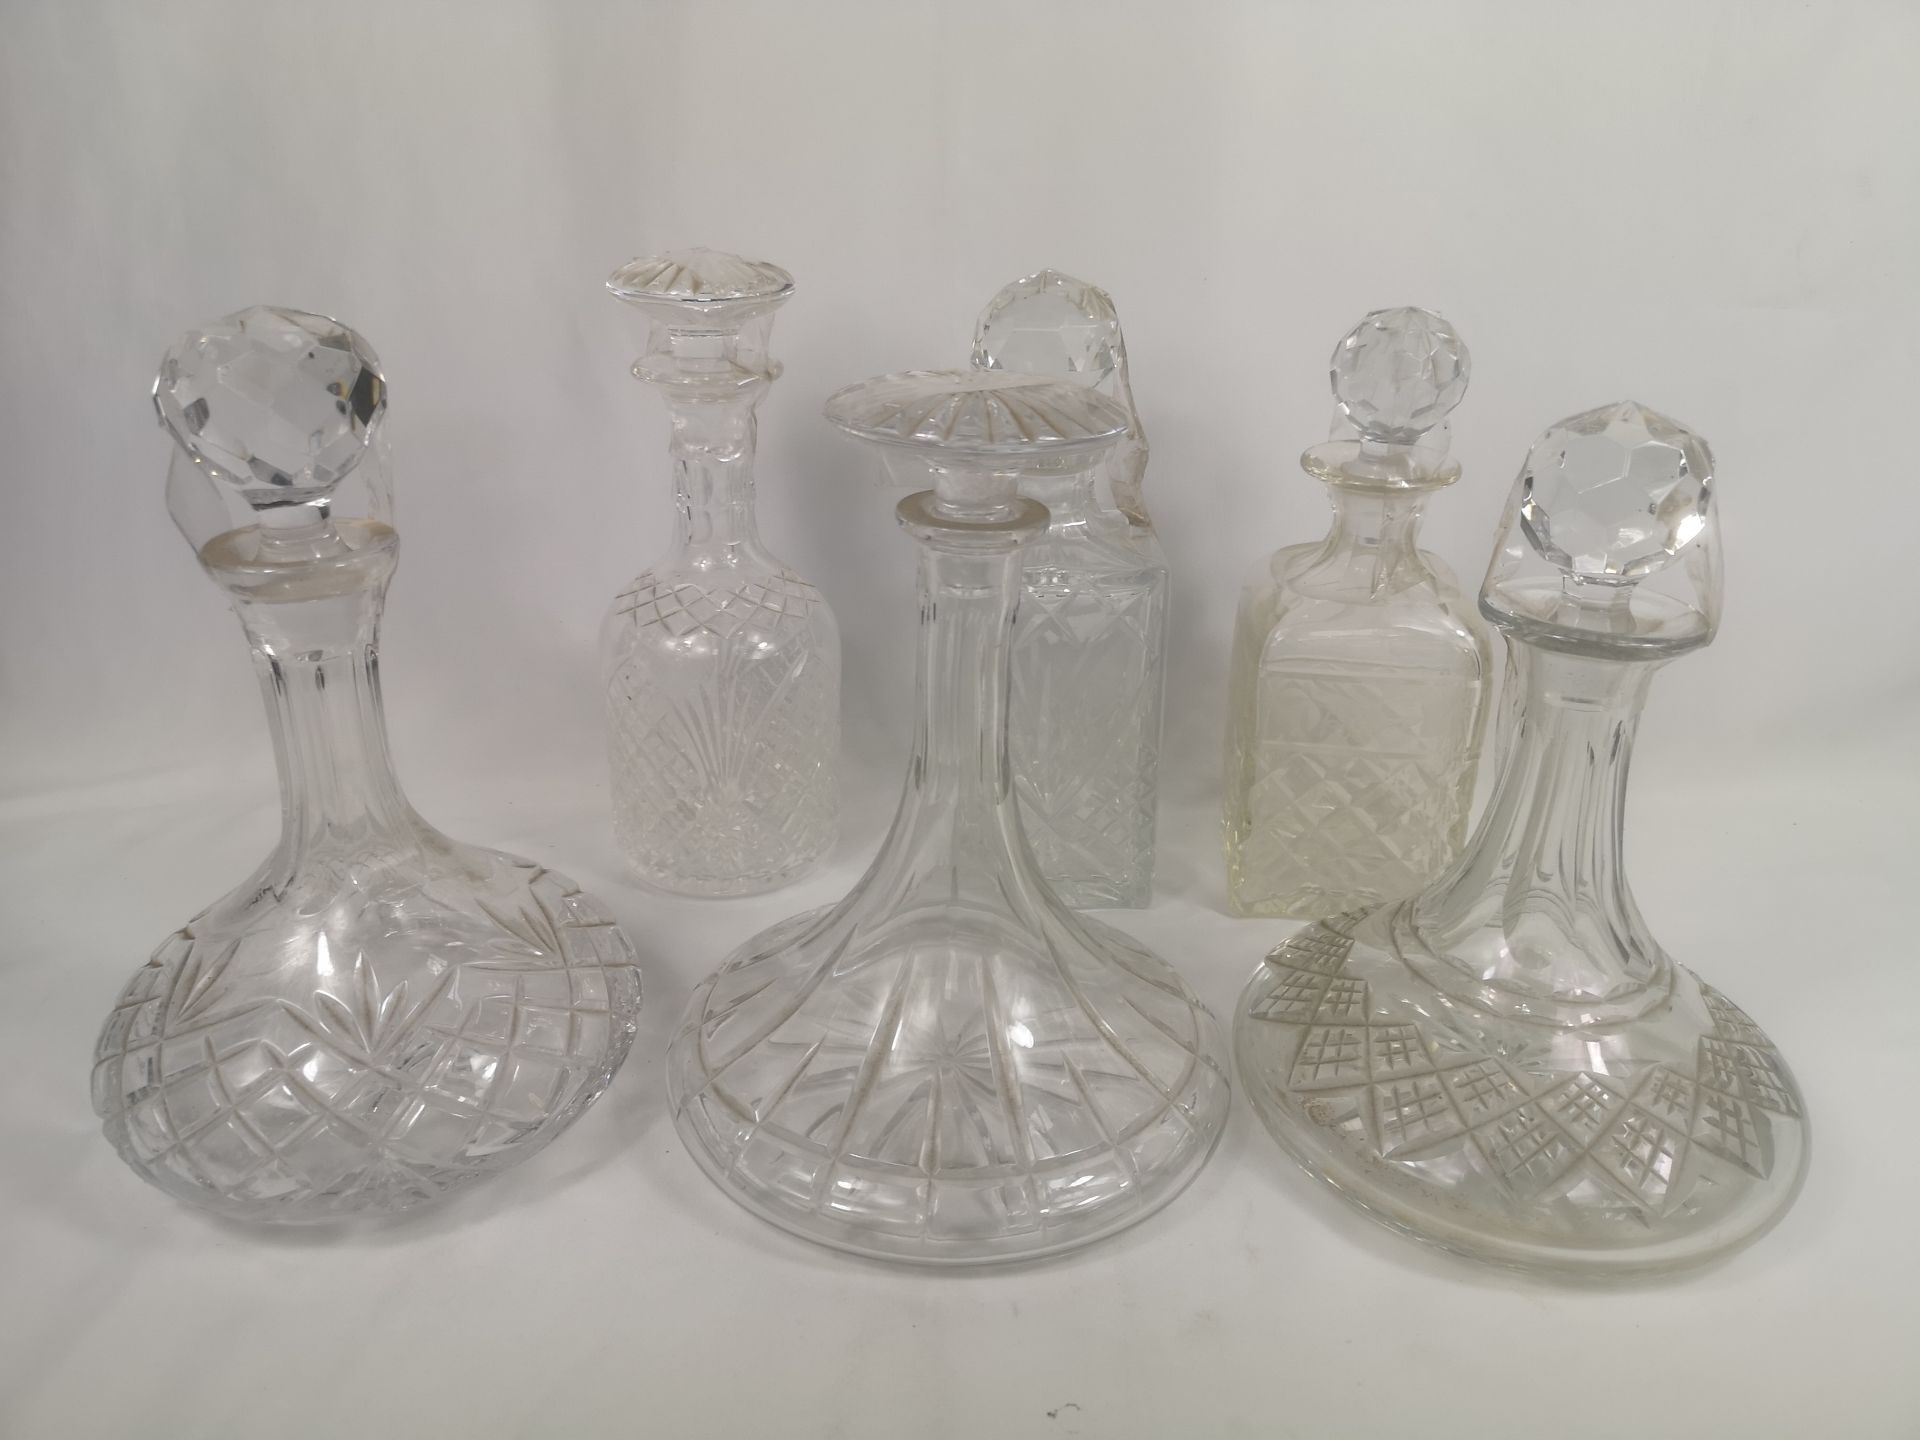 Six cut glass decanters